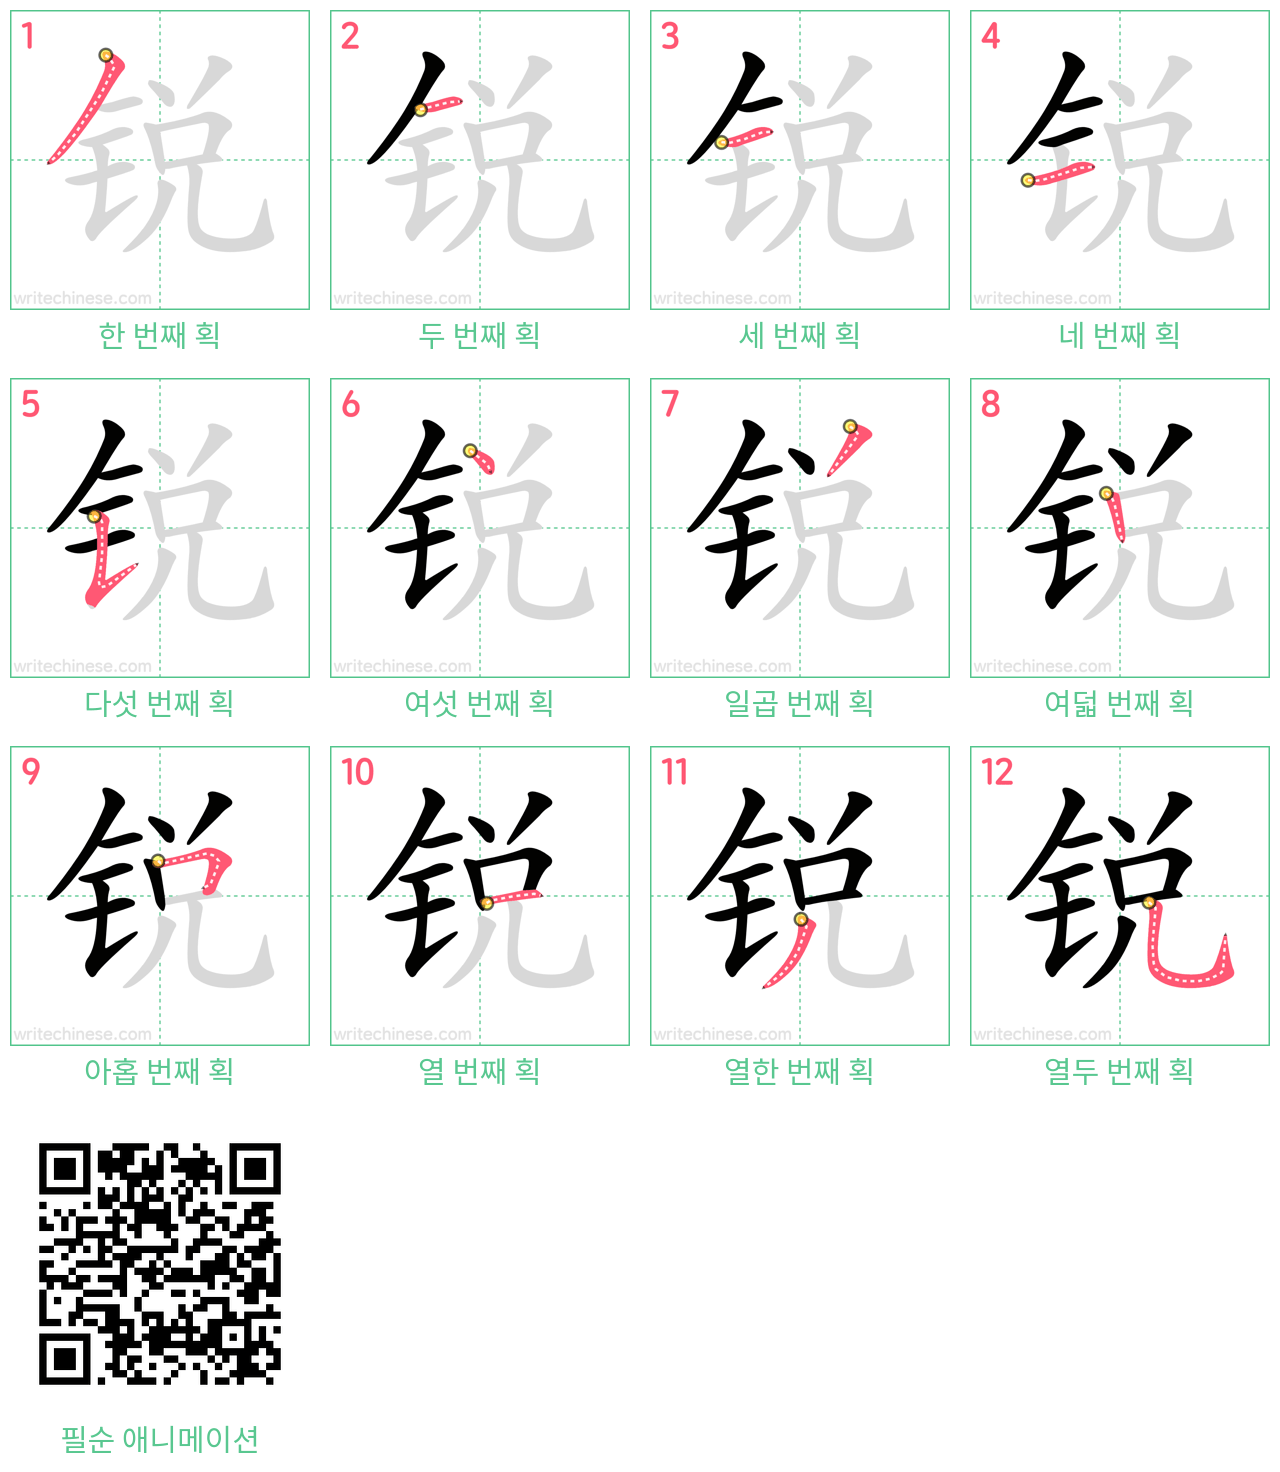 锐 step-by-step stroke order diagrams